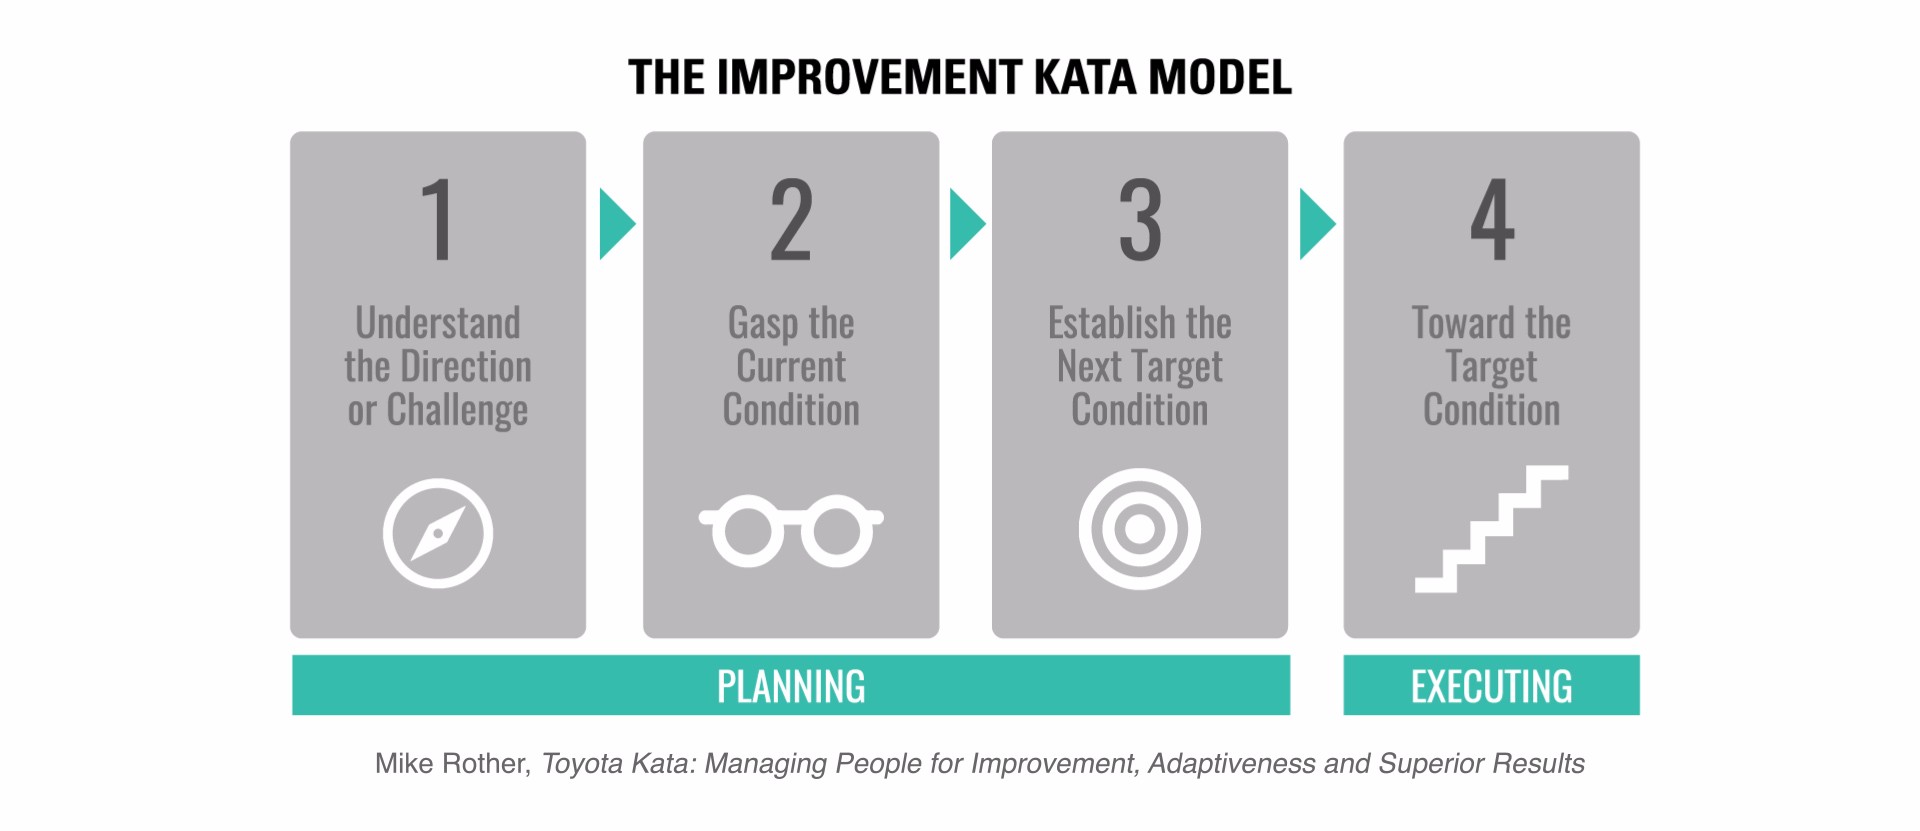 The Improvement Kata